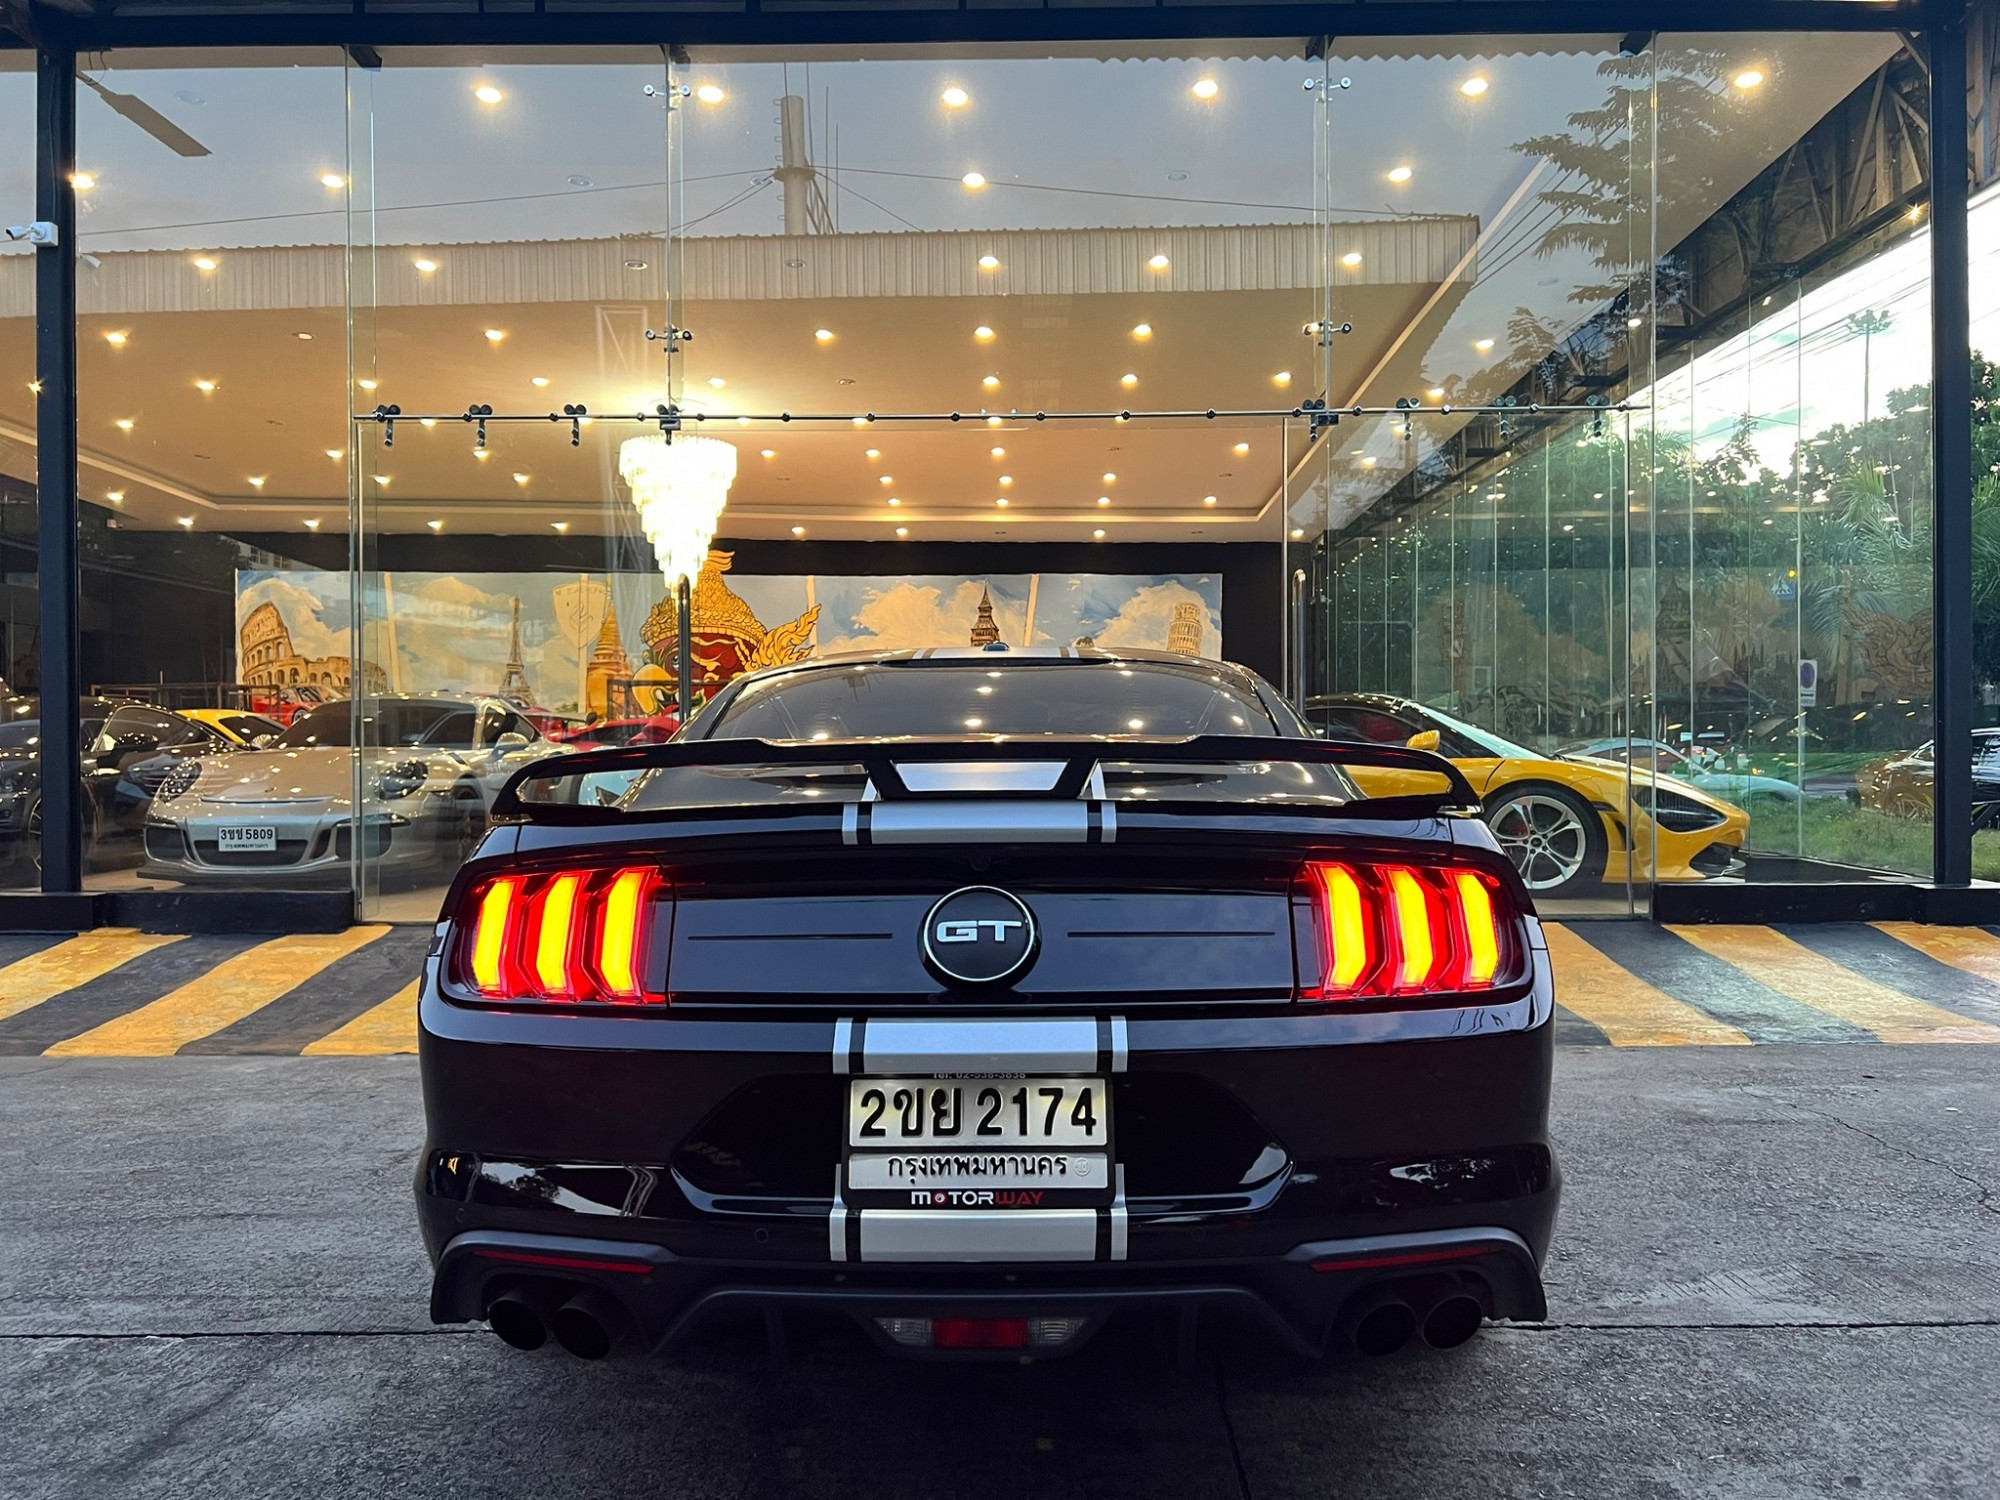 2020 Ford Mustang à¸ªà¸µà¸”à¸³